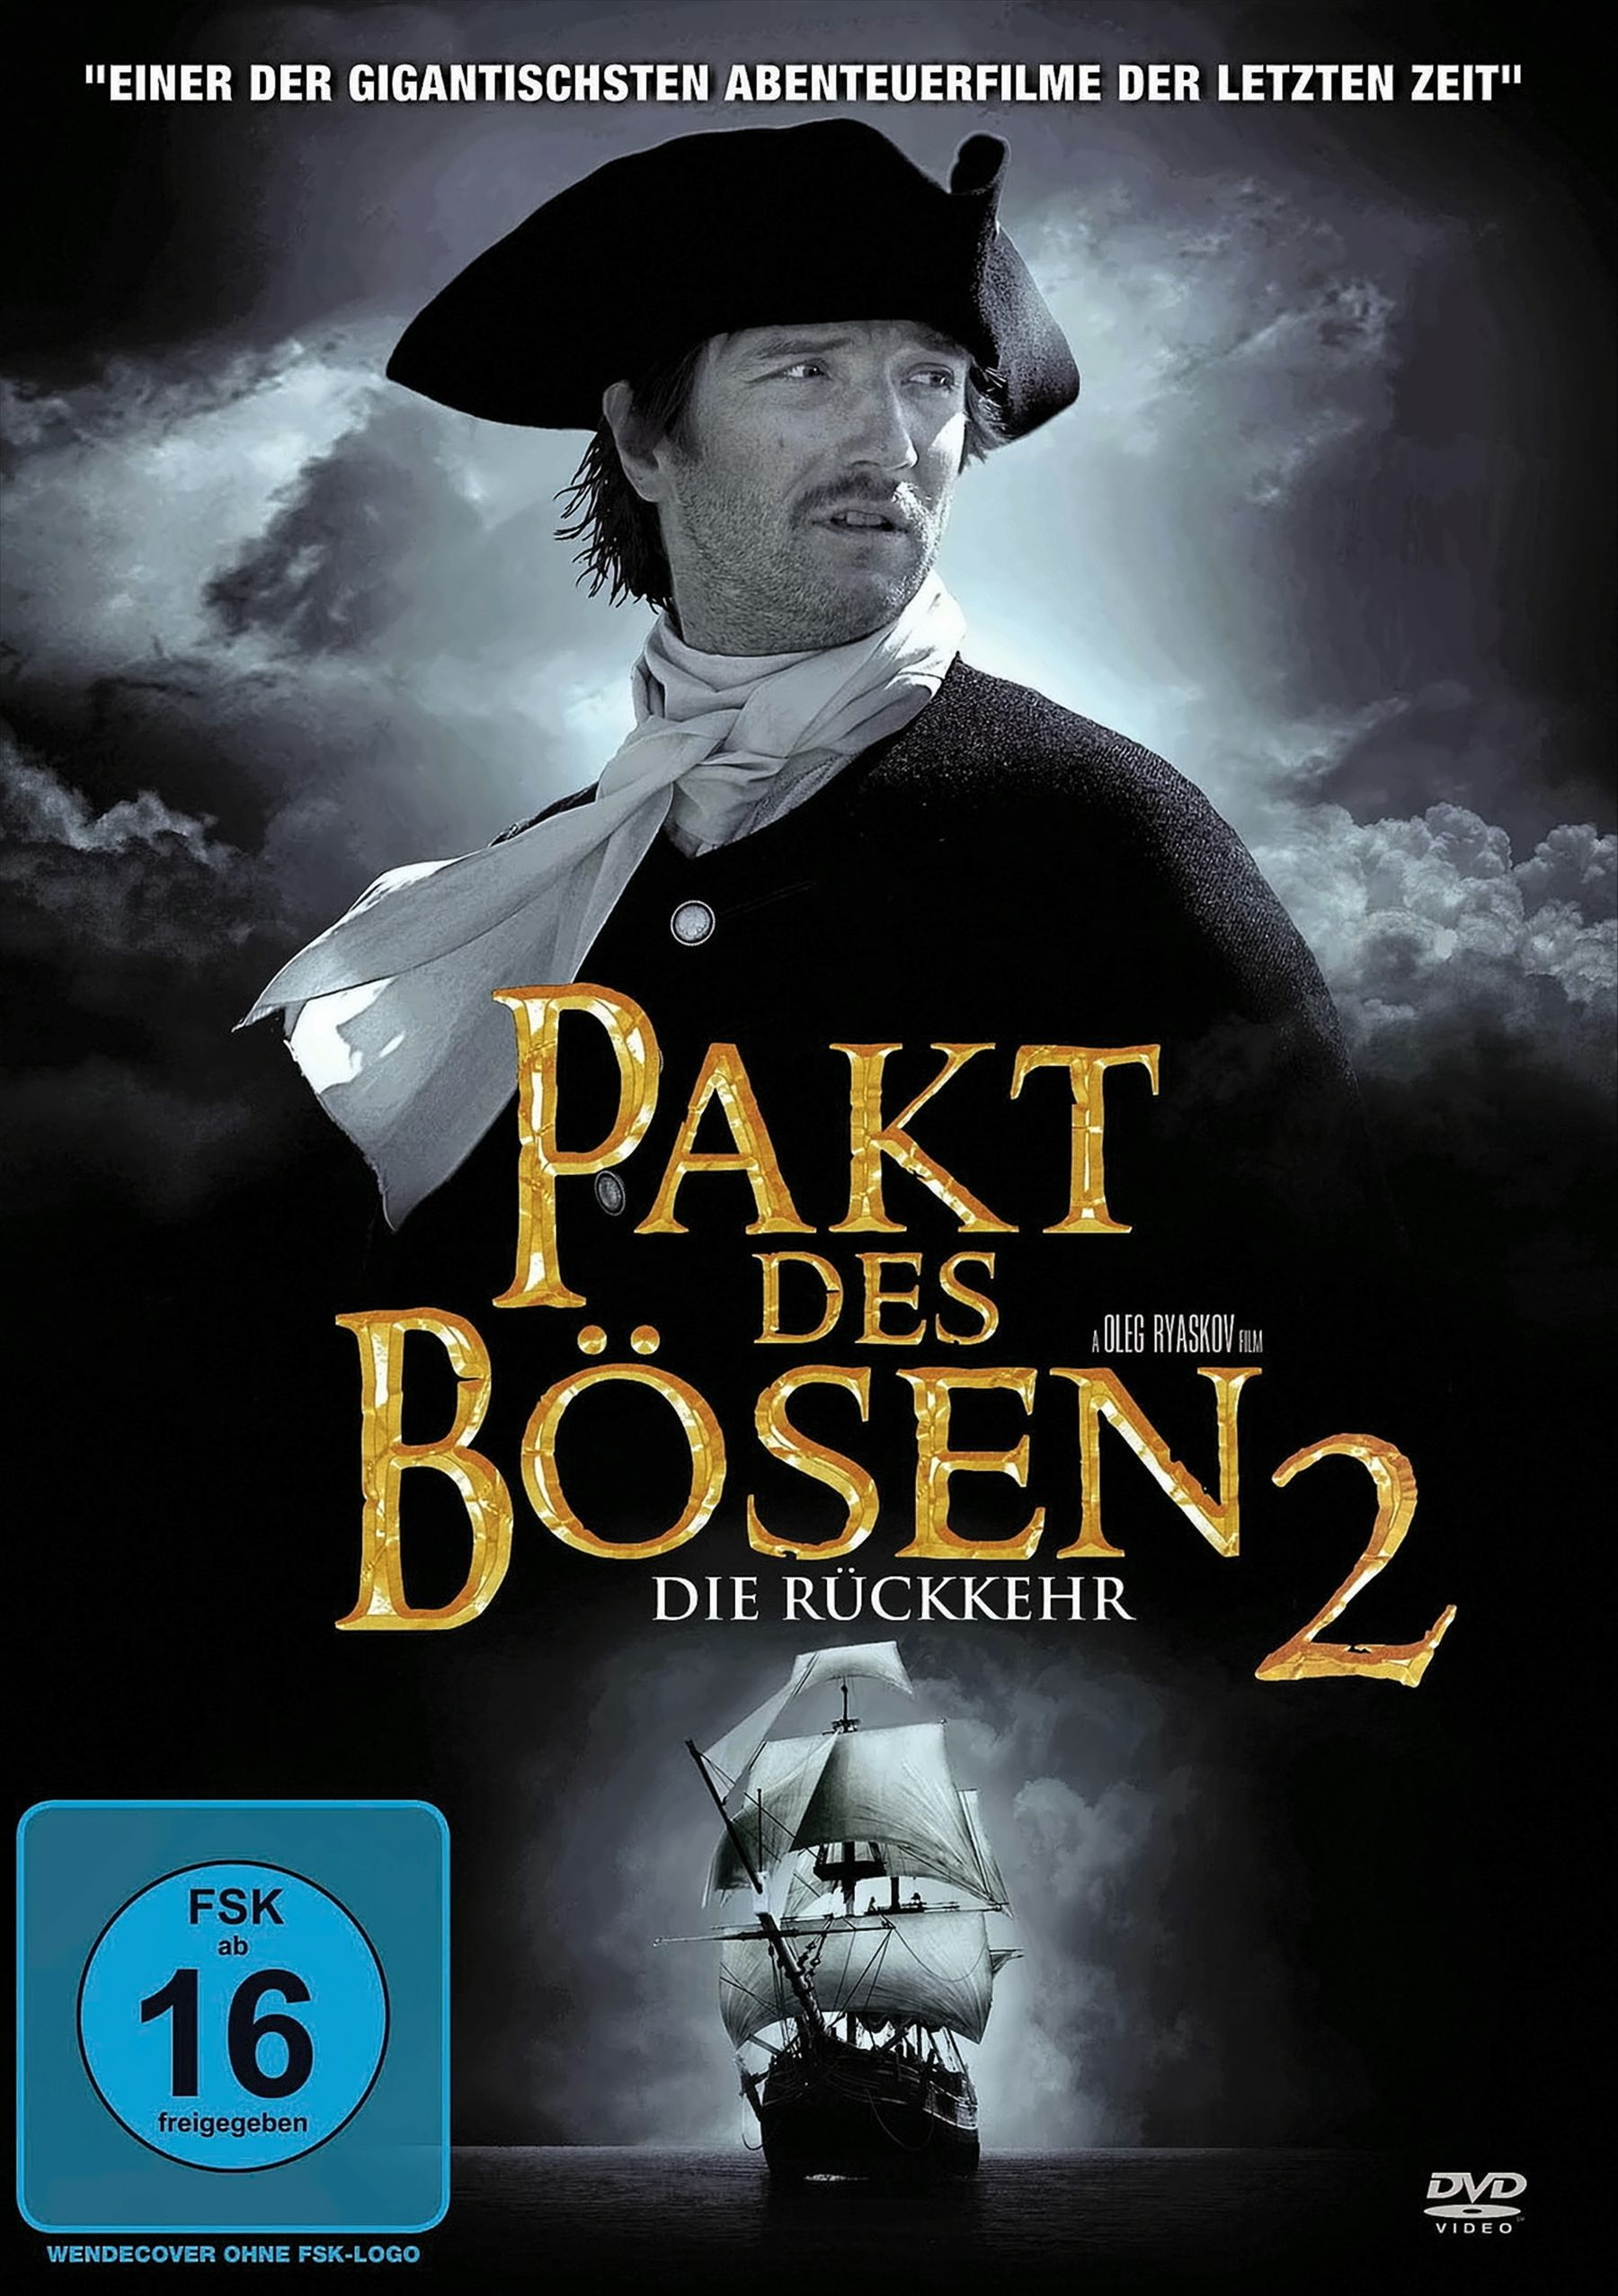 2 Pakt Bösen Rückkehr Die - des DVD